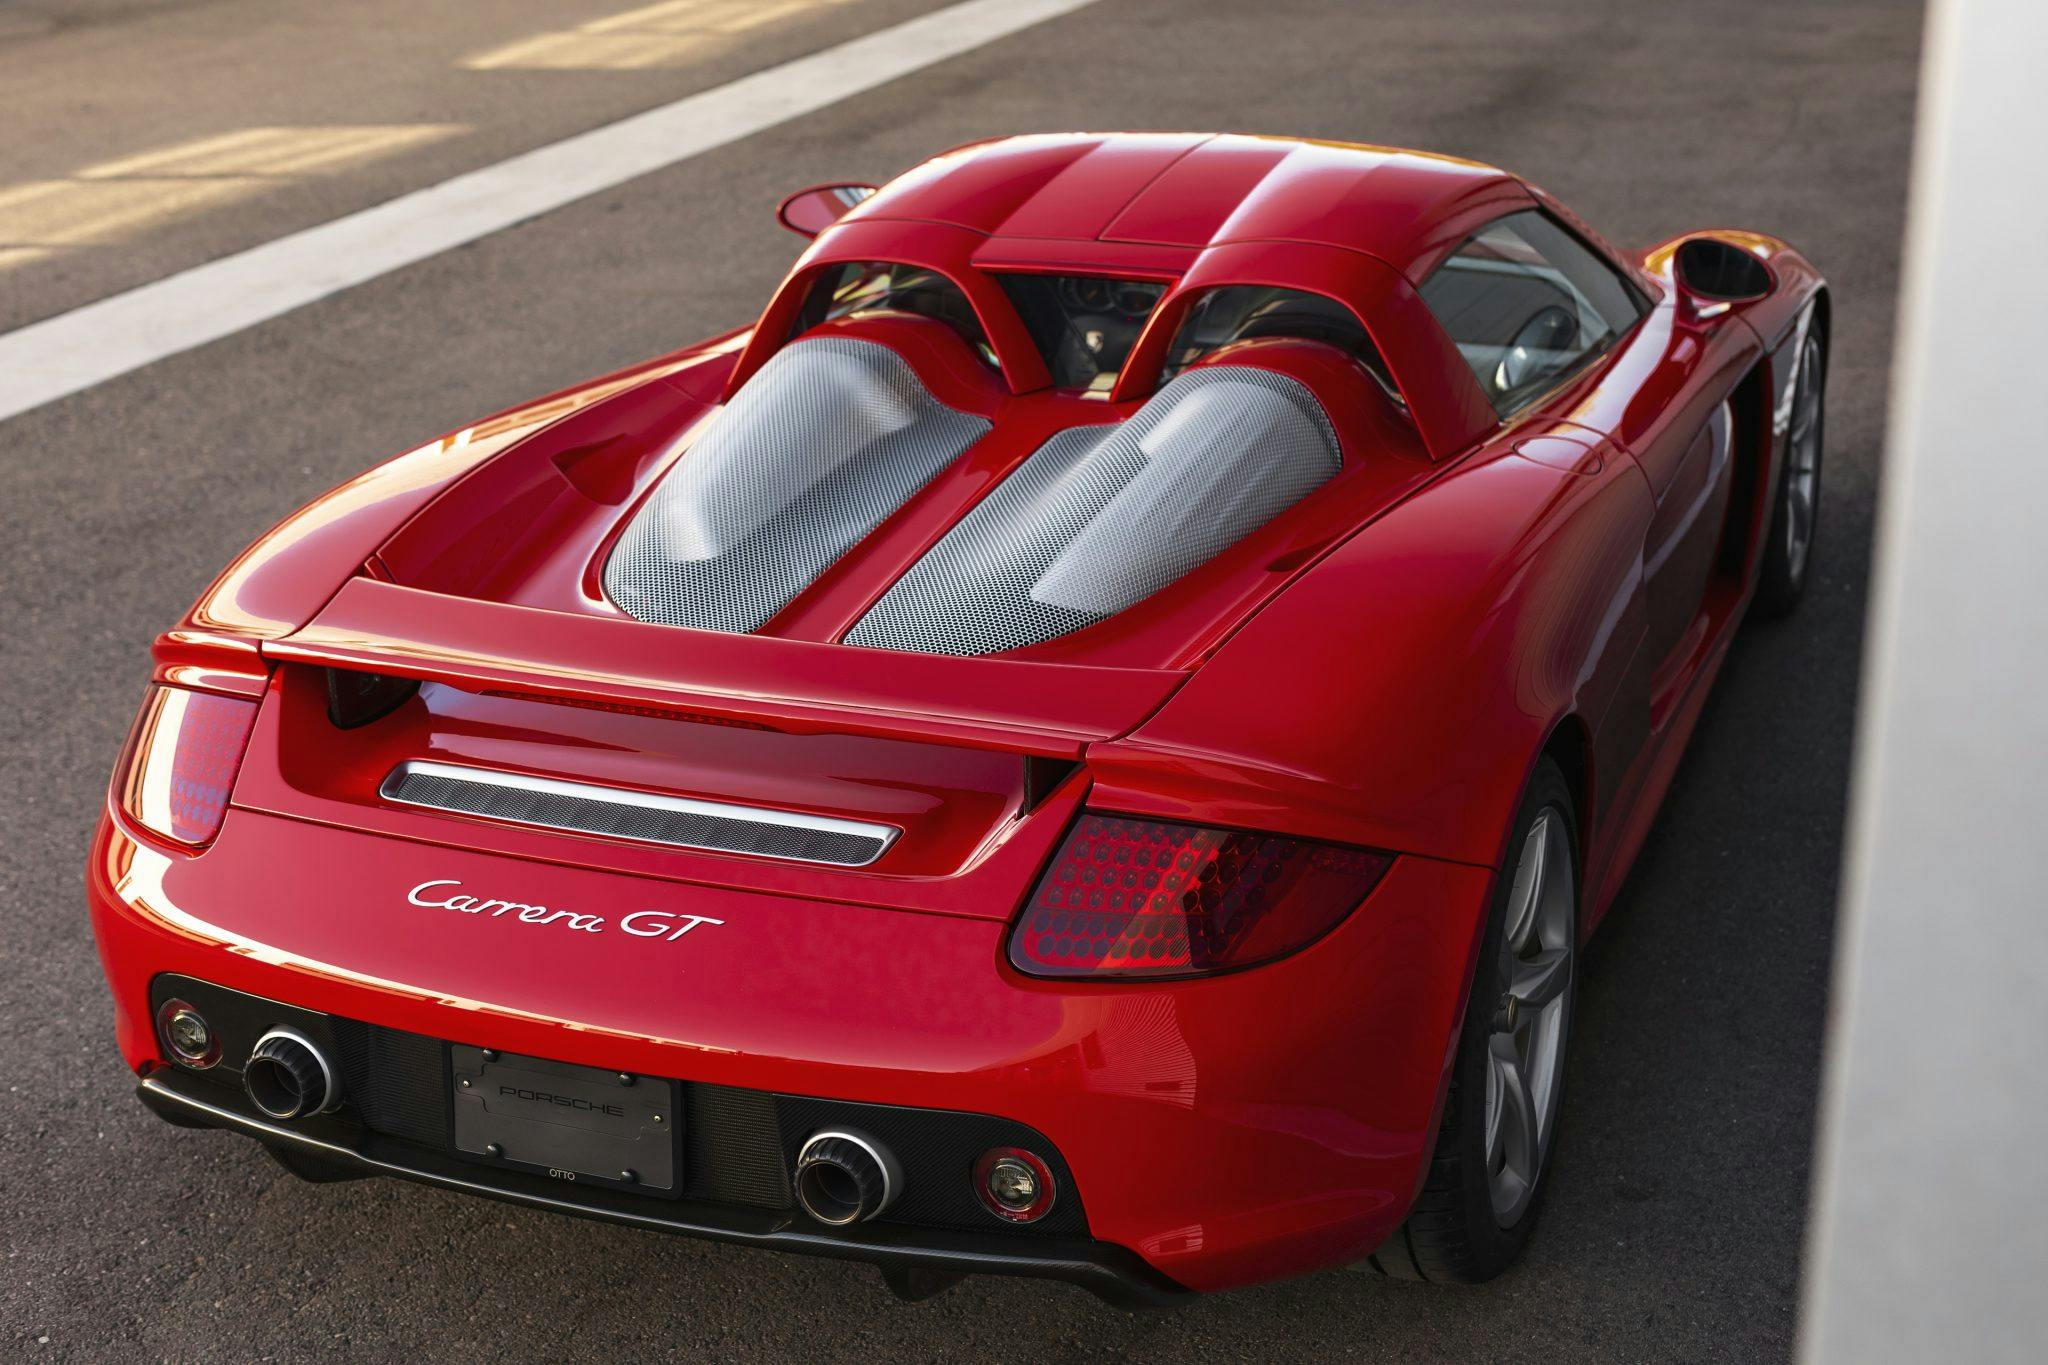 2005 Porsche Carrera GT supercar